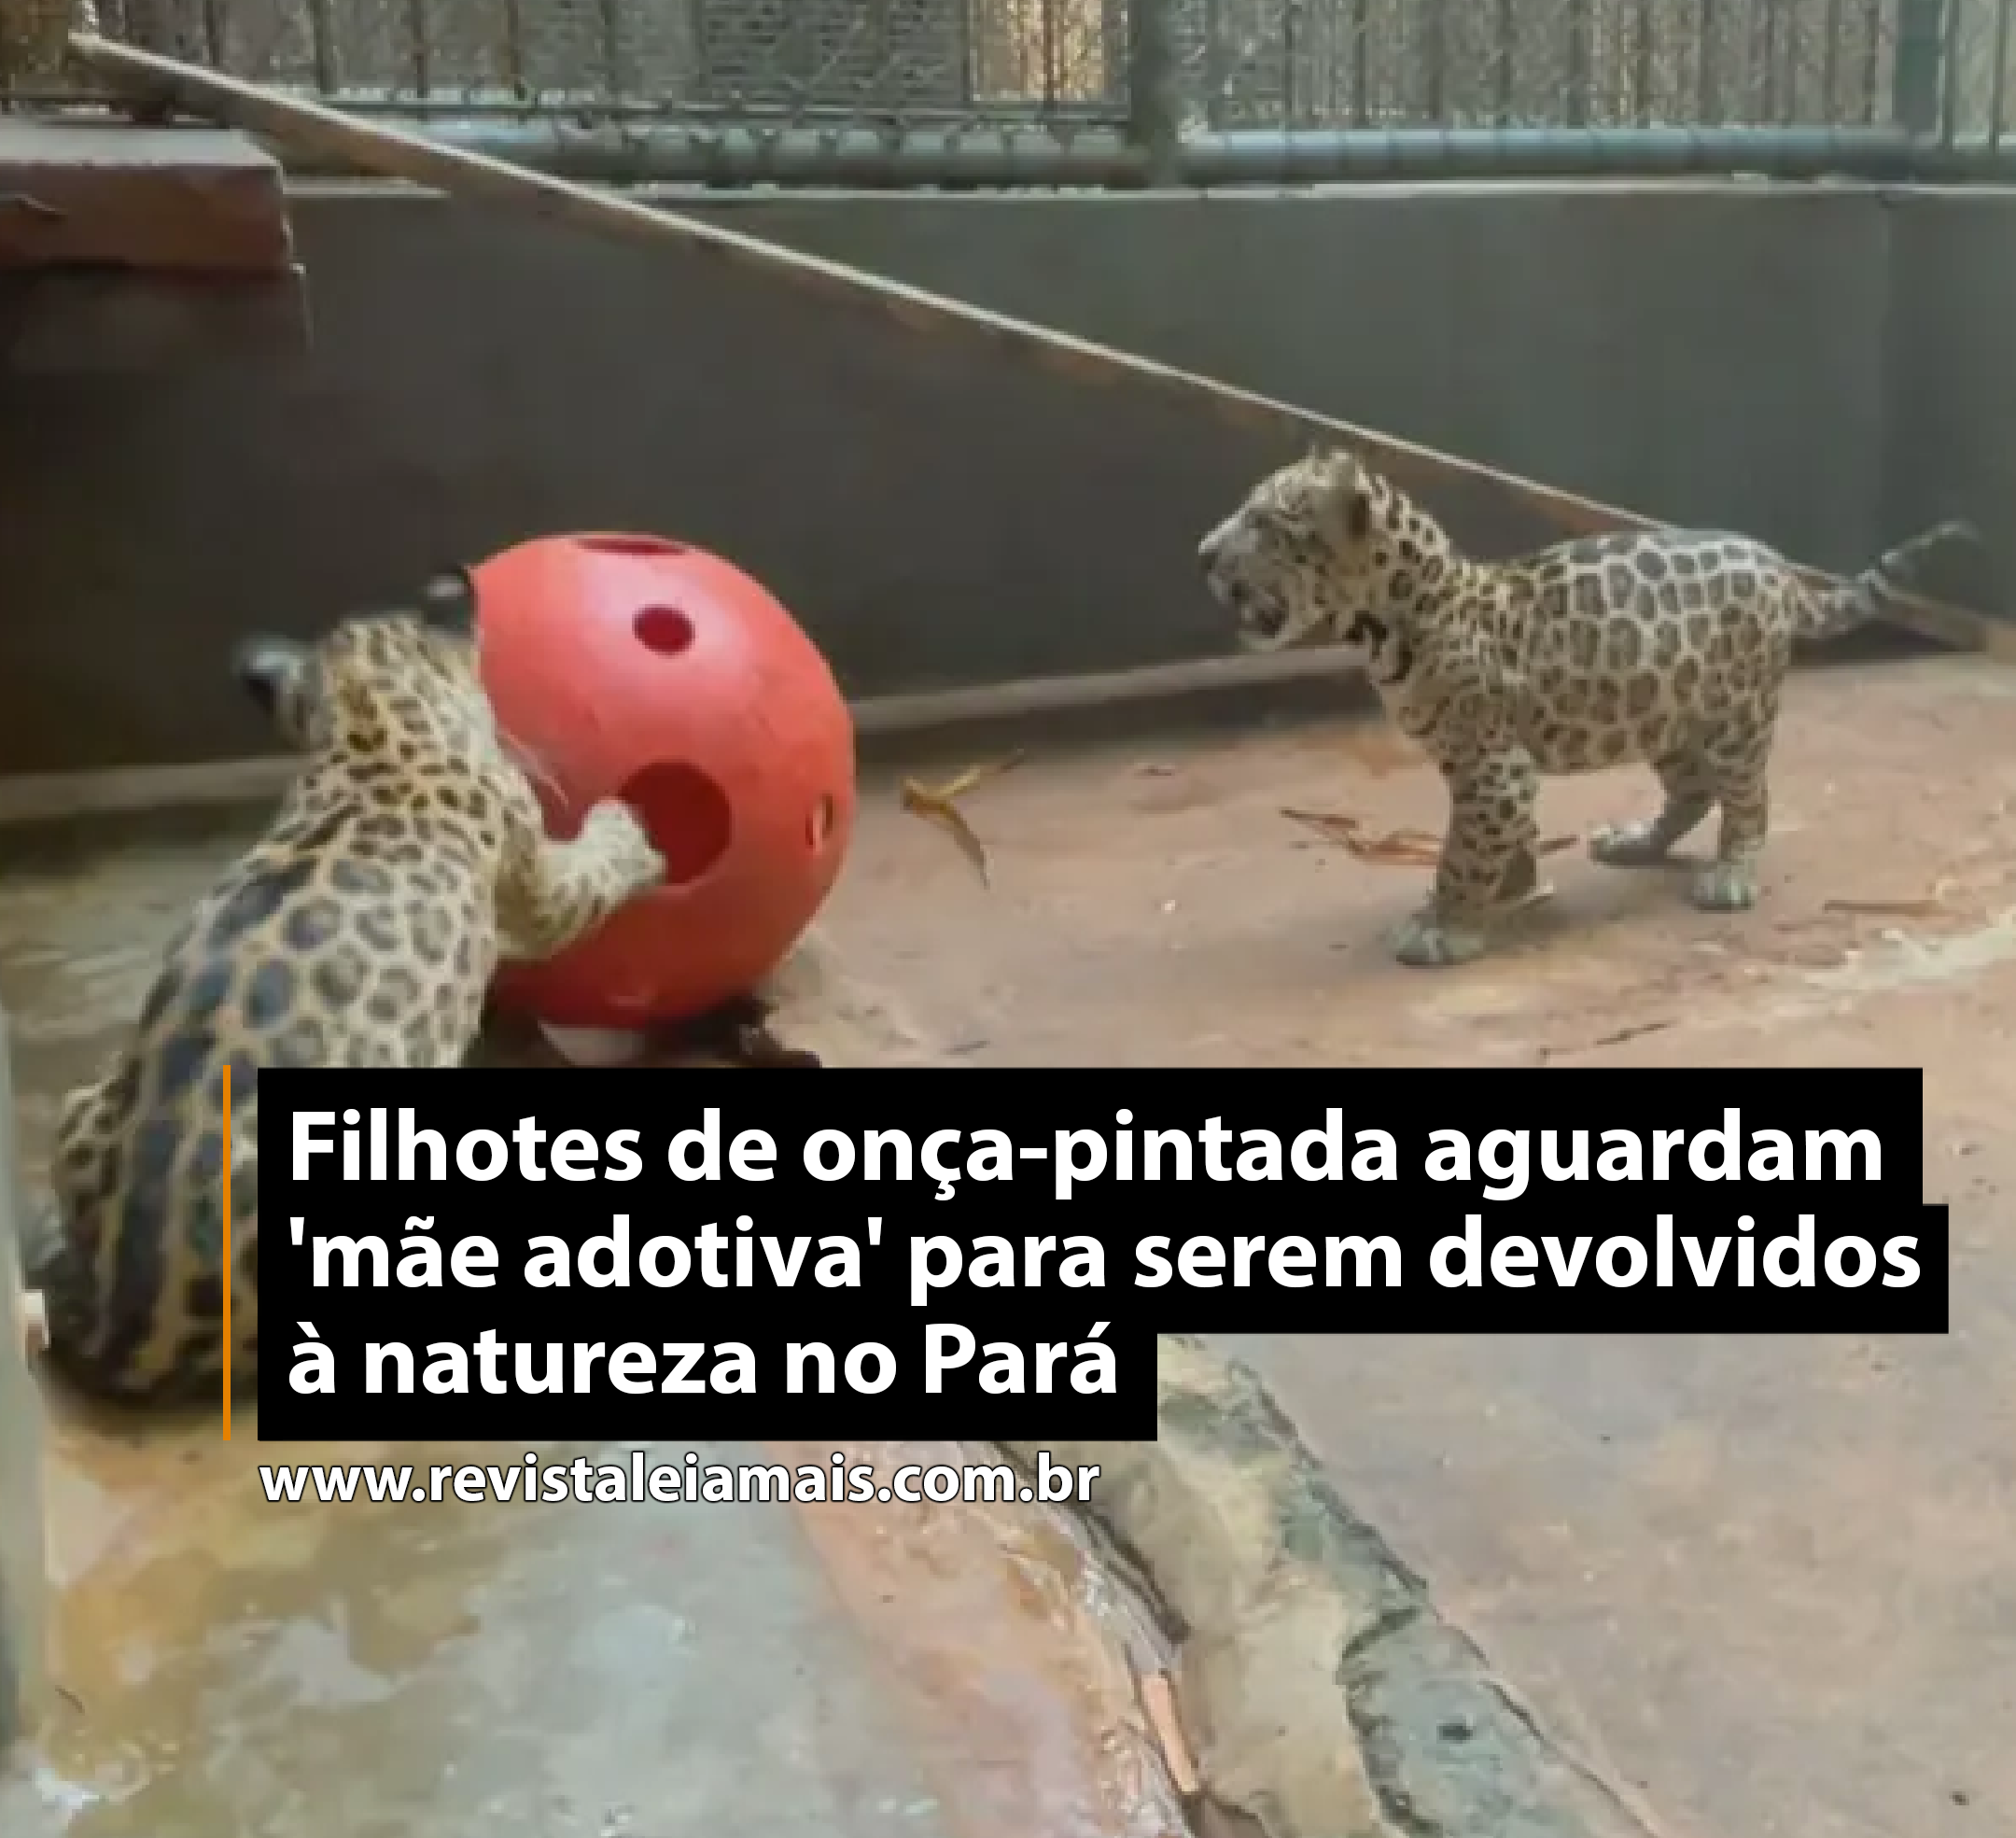 Filhotes de onça-pintada aguardam 'mãe adotiva' para serem devolvidos à natureza no Pará